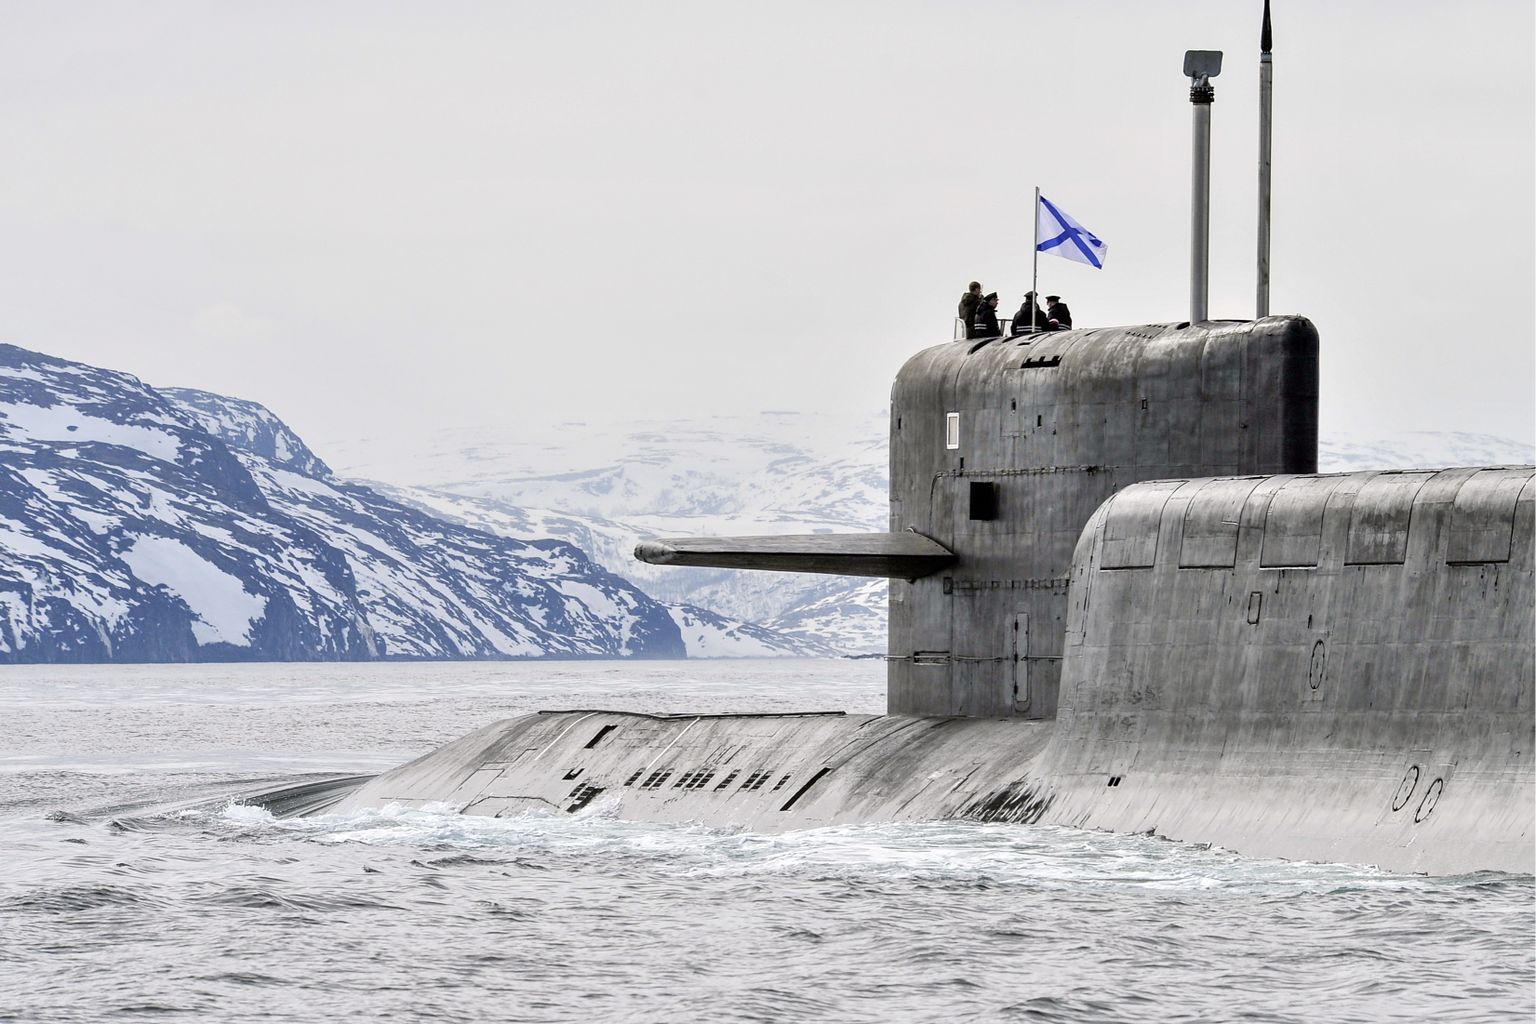 Venemaa mereväe K-18-tüüpi tuumaallveelaev Karelia õppusel Koola poolsaare lähistel Barentsi merel tunamullu kevadel.